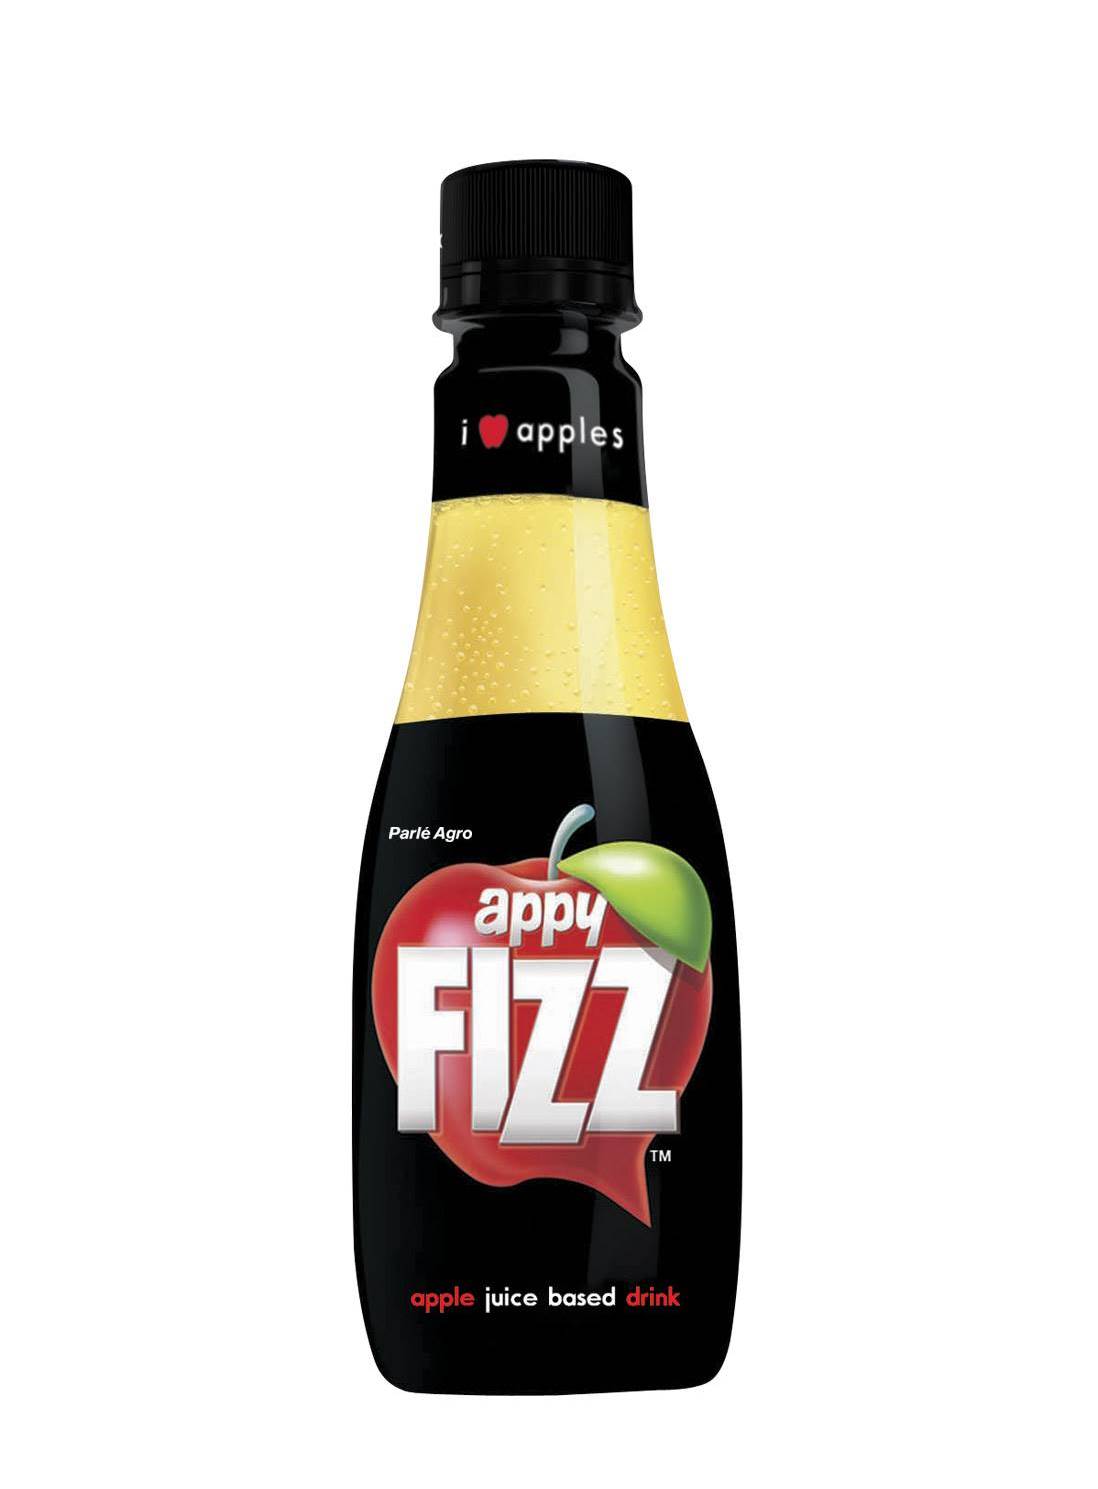 Appy Fizz